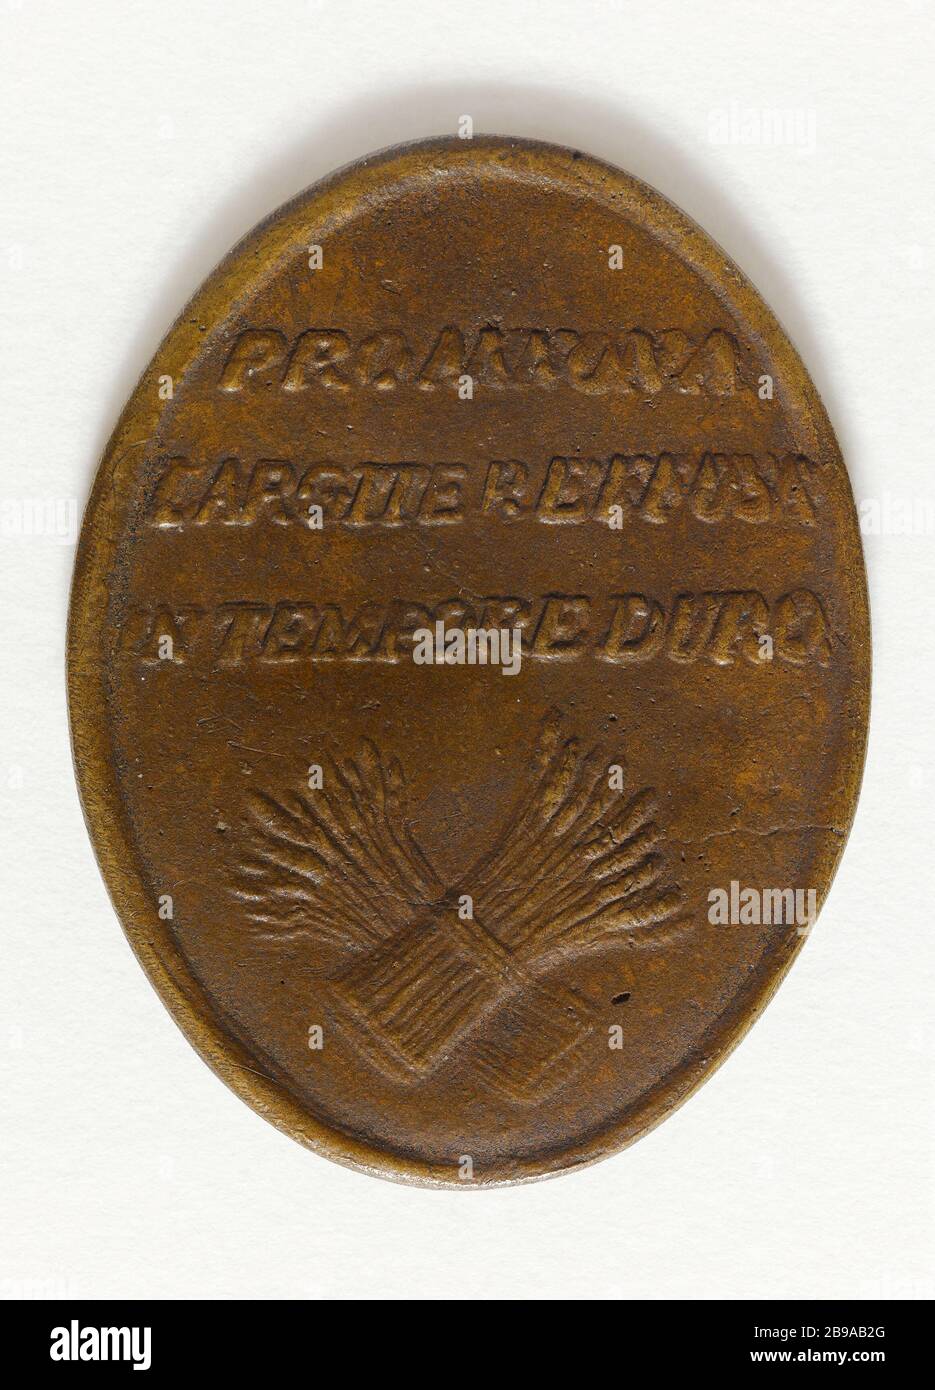 MEDAILLE DER STADT NICOLAS A MEAUX TRONCHON, INHABER MARTIN EINE LÜCKE IN ANERKENNUNG DER VON IHM ANGEBOTENEN GETREIDEERLEICHTERUNGEN ZEIT DER KNAPPHEIT, 6. NOVEMBER 1789 ANONYME. Médaille décernée par la ville de Meaux à Nicolas Tronchon, propriétaire à Fosse Martin, en reconnaissance des secours en grain offerts par lui en temps de disette, 6 novembre 1789. Bronze. 1789. Paris, musée Carnavalet. Stockfoto